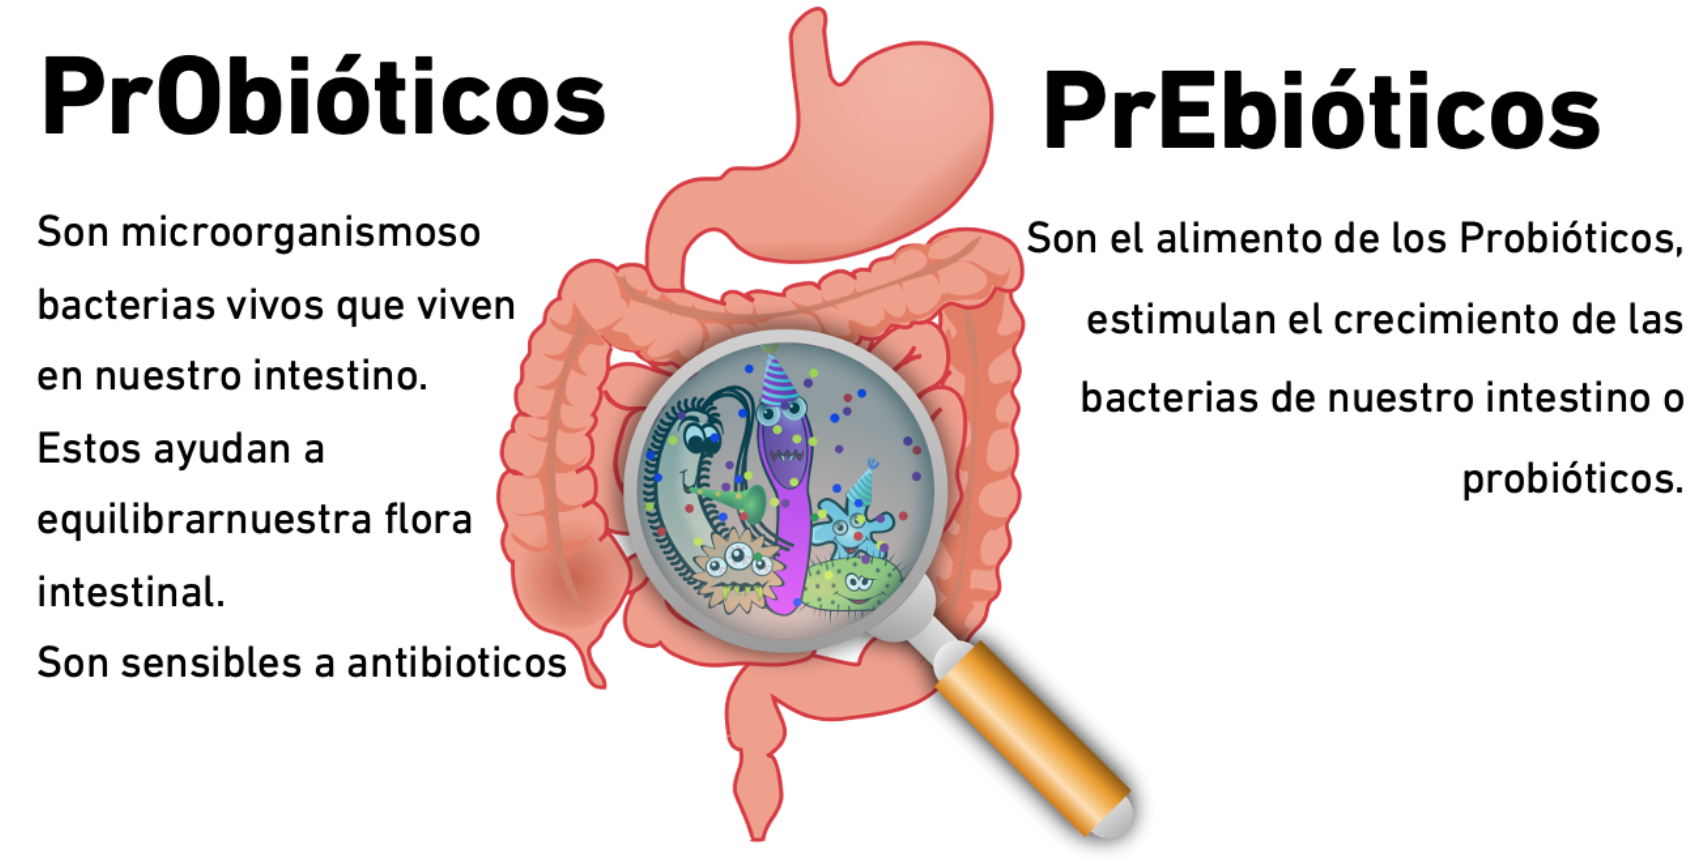 ¿Qué son los prebióticos?